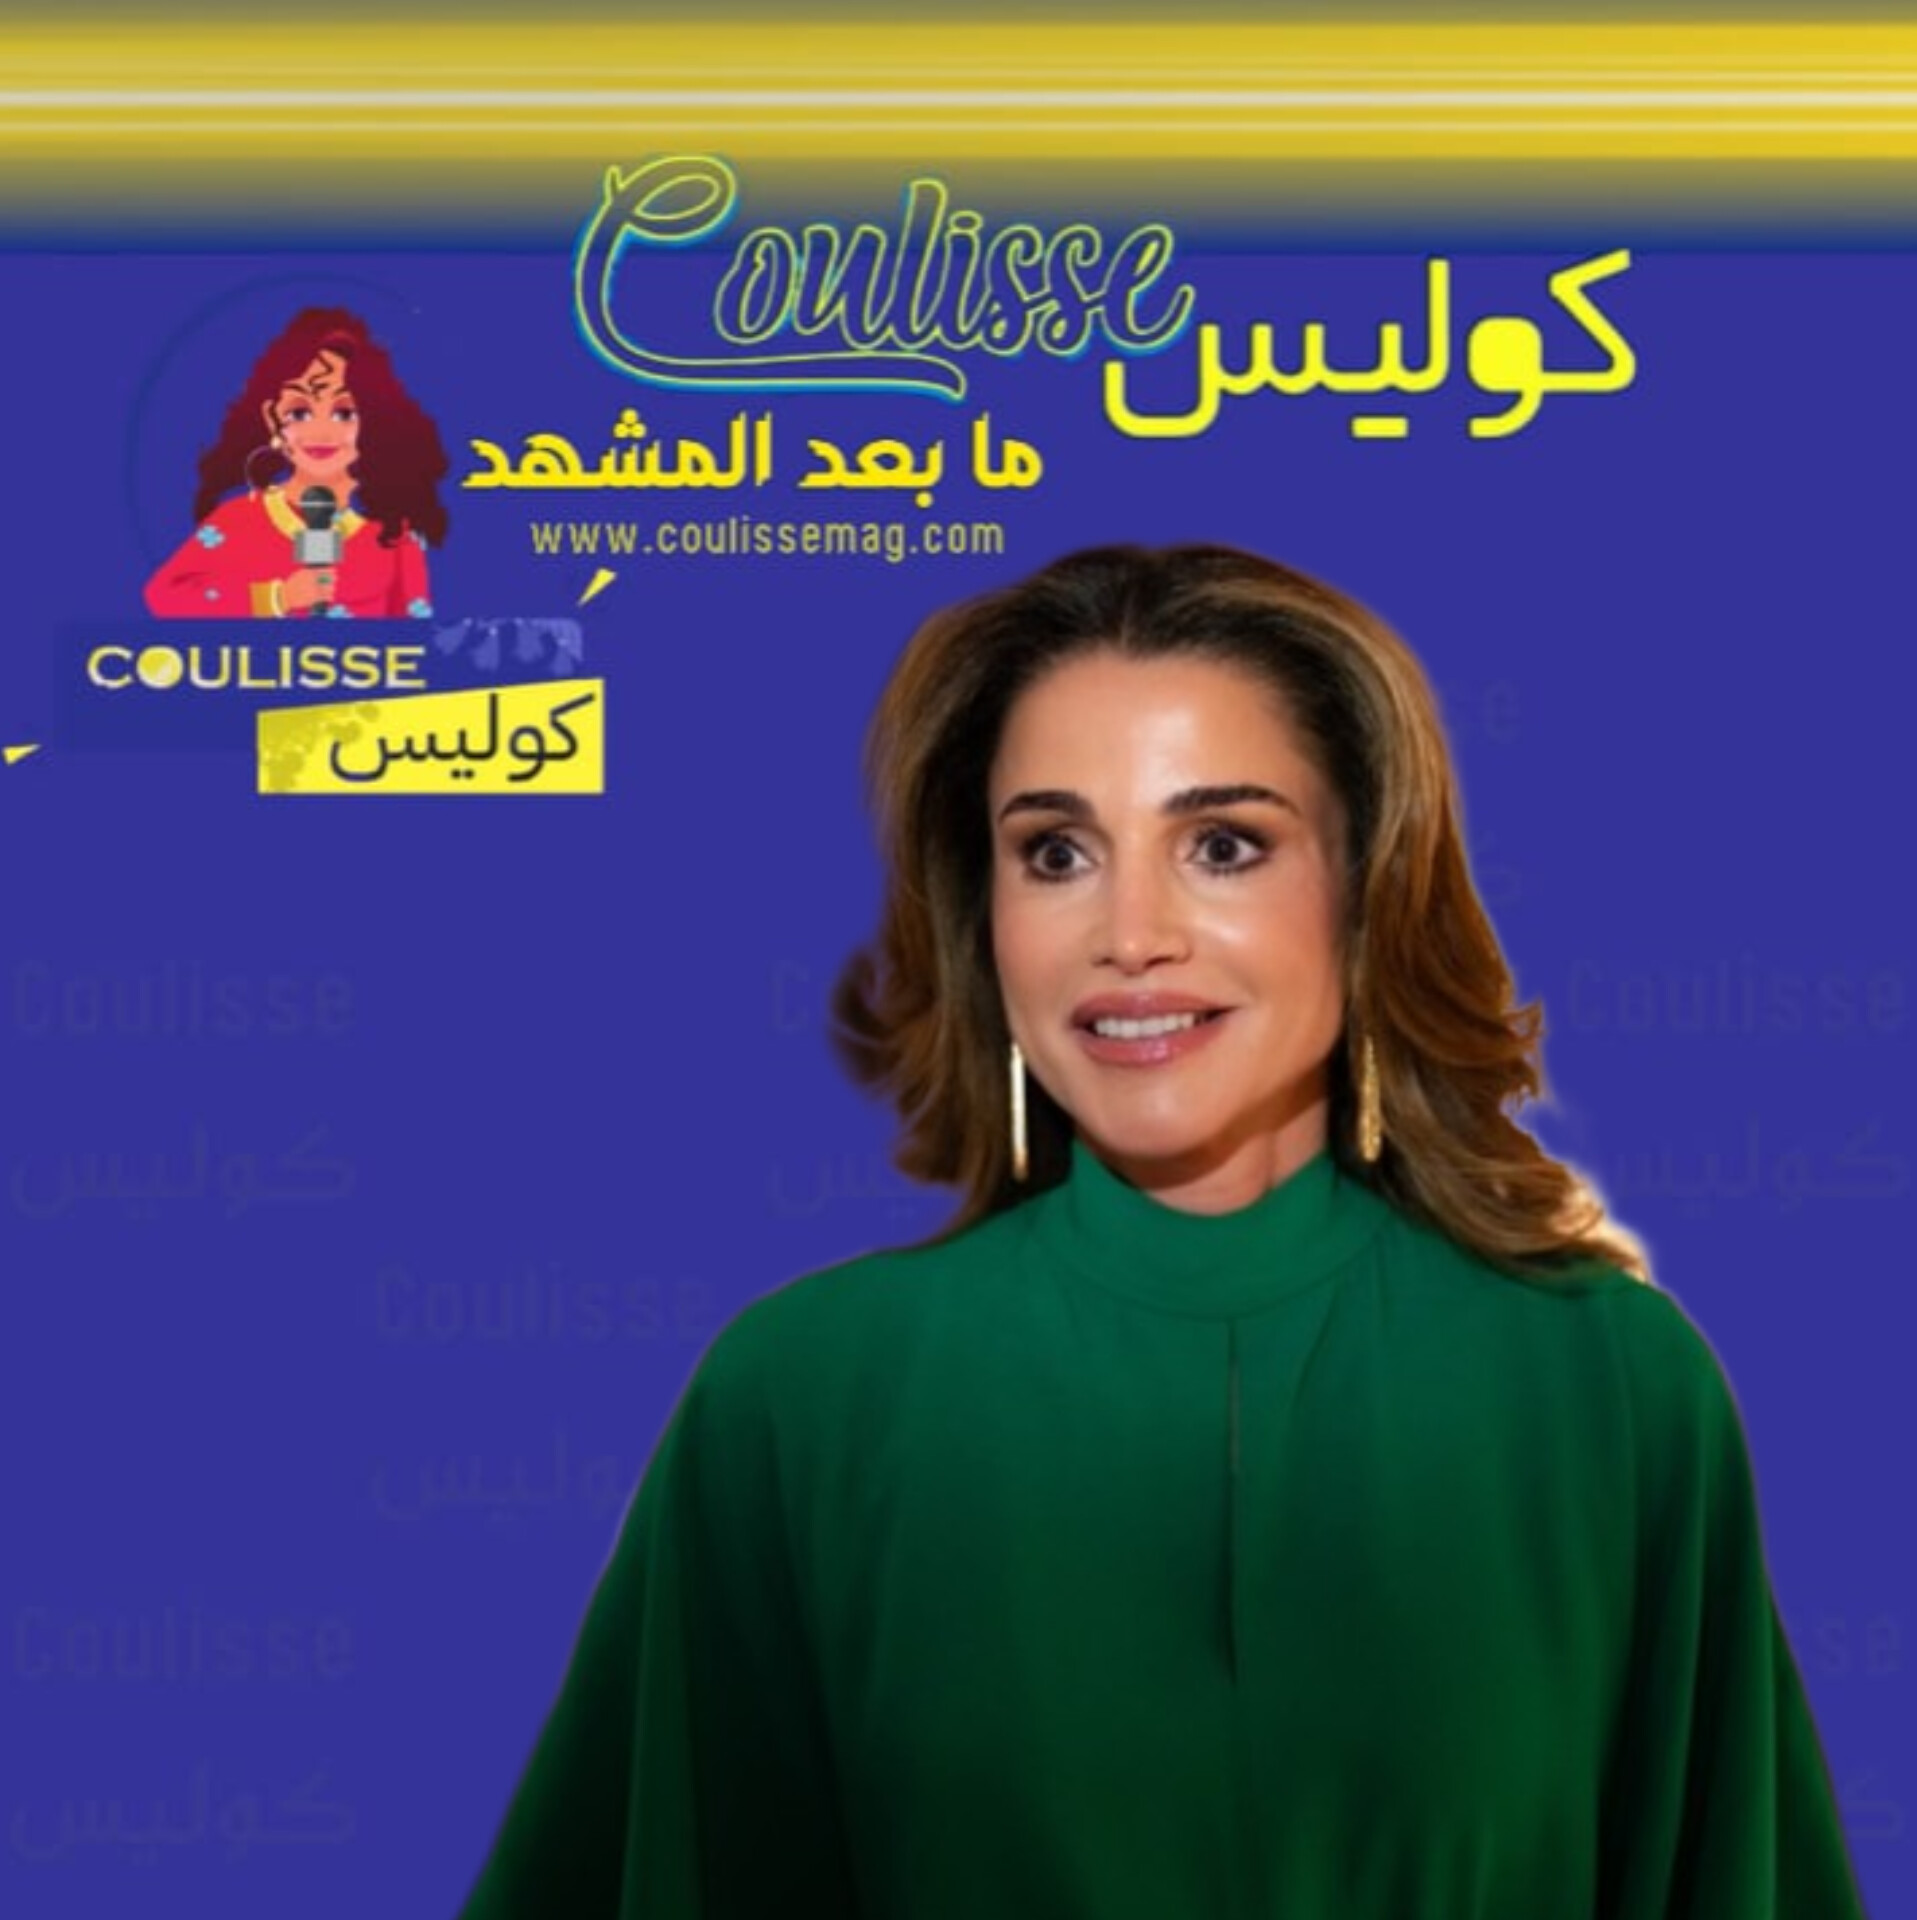 الملكة رانيا أول زوجة حاكم عربيّ تنضم إلى هذه الحملة التّاريخيّة! – فيديو